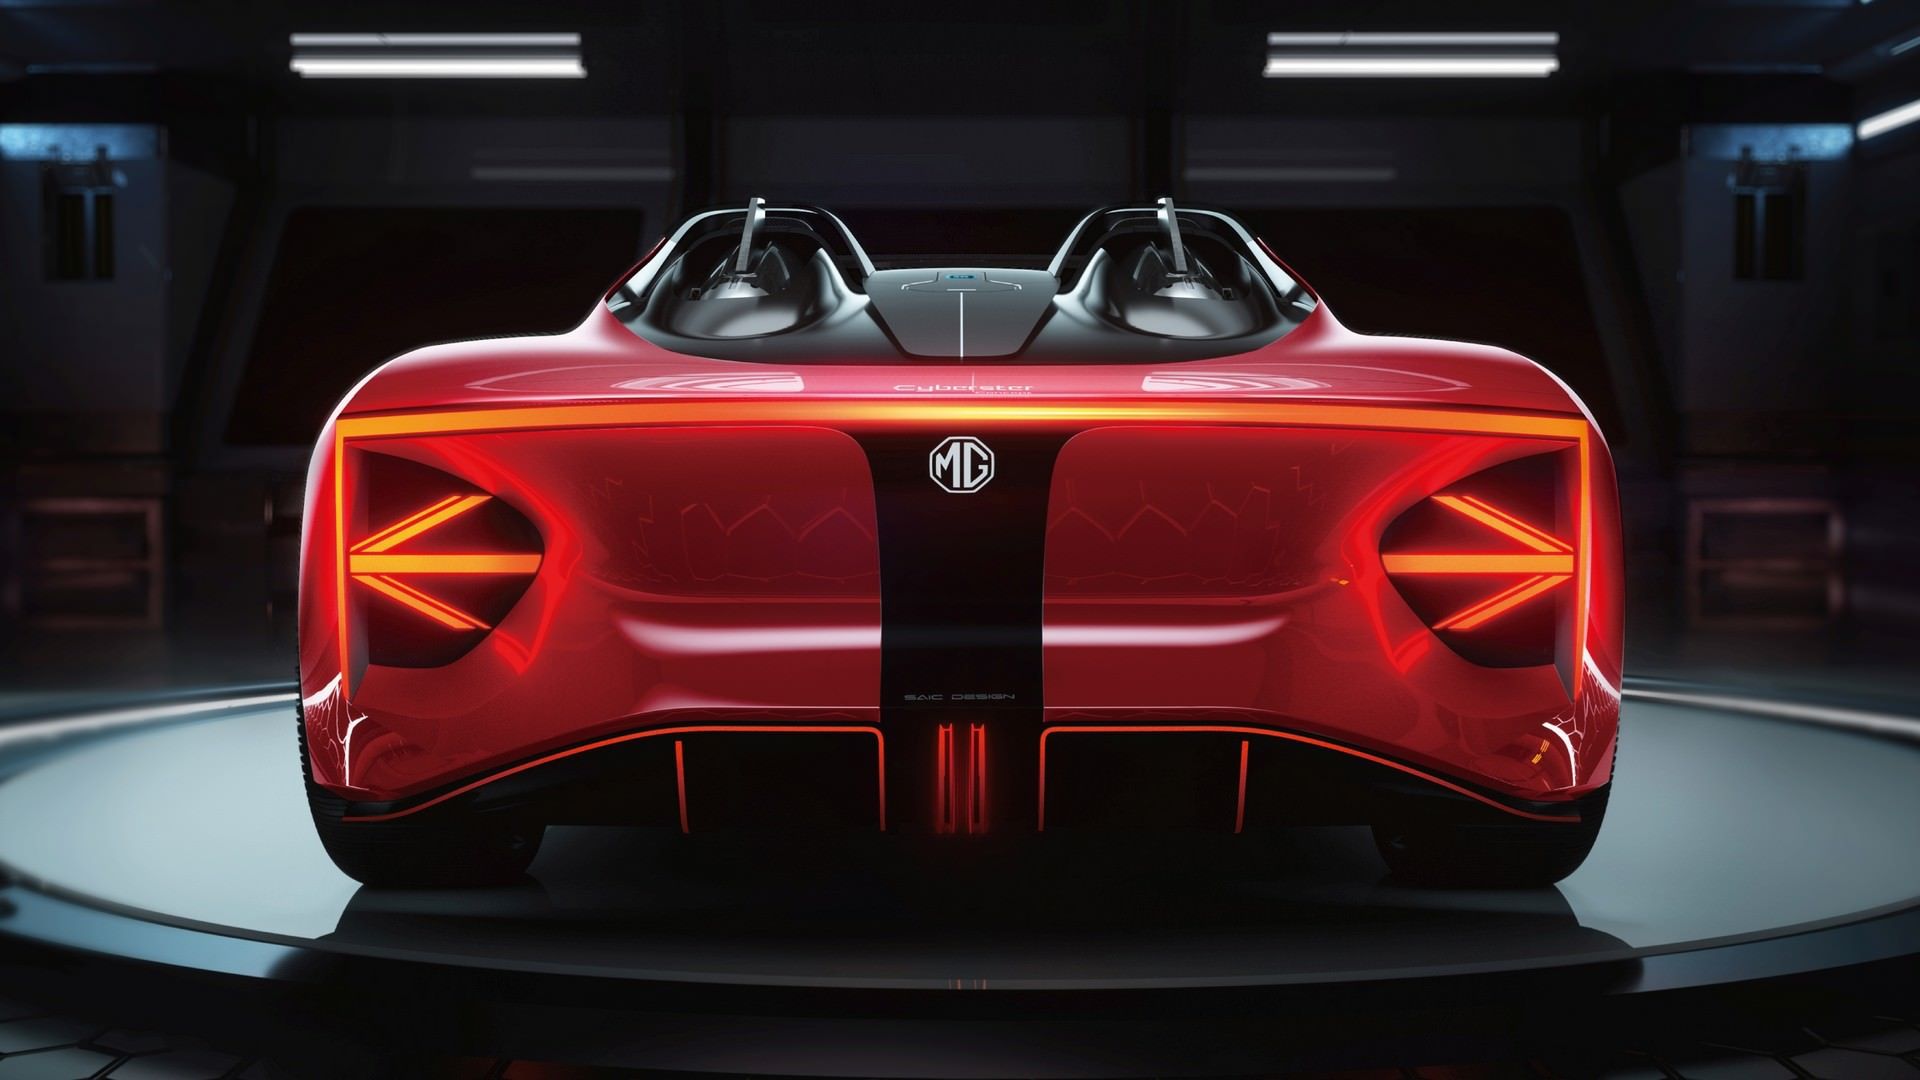 نمای عقب خودروی مفهومی  و برقی ام جی سایبرستر / MG Cyberster Concept قرمز رنگ